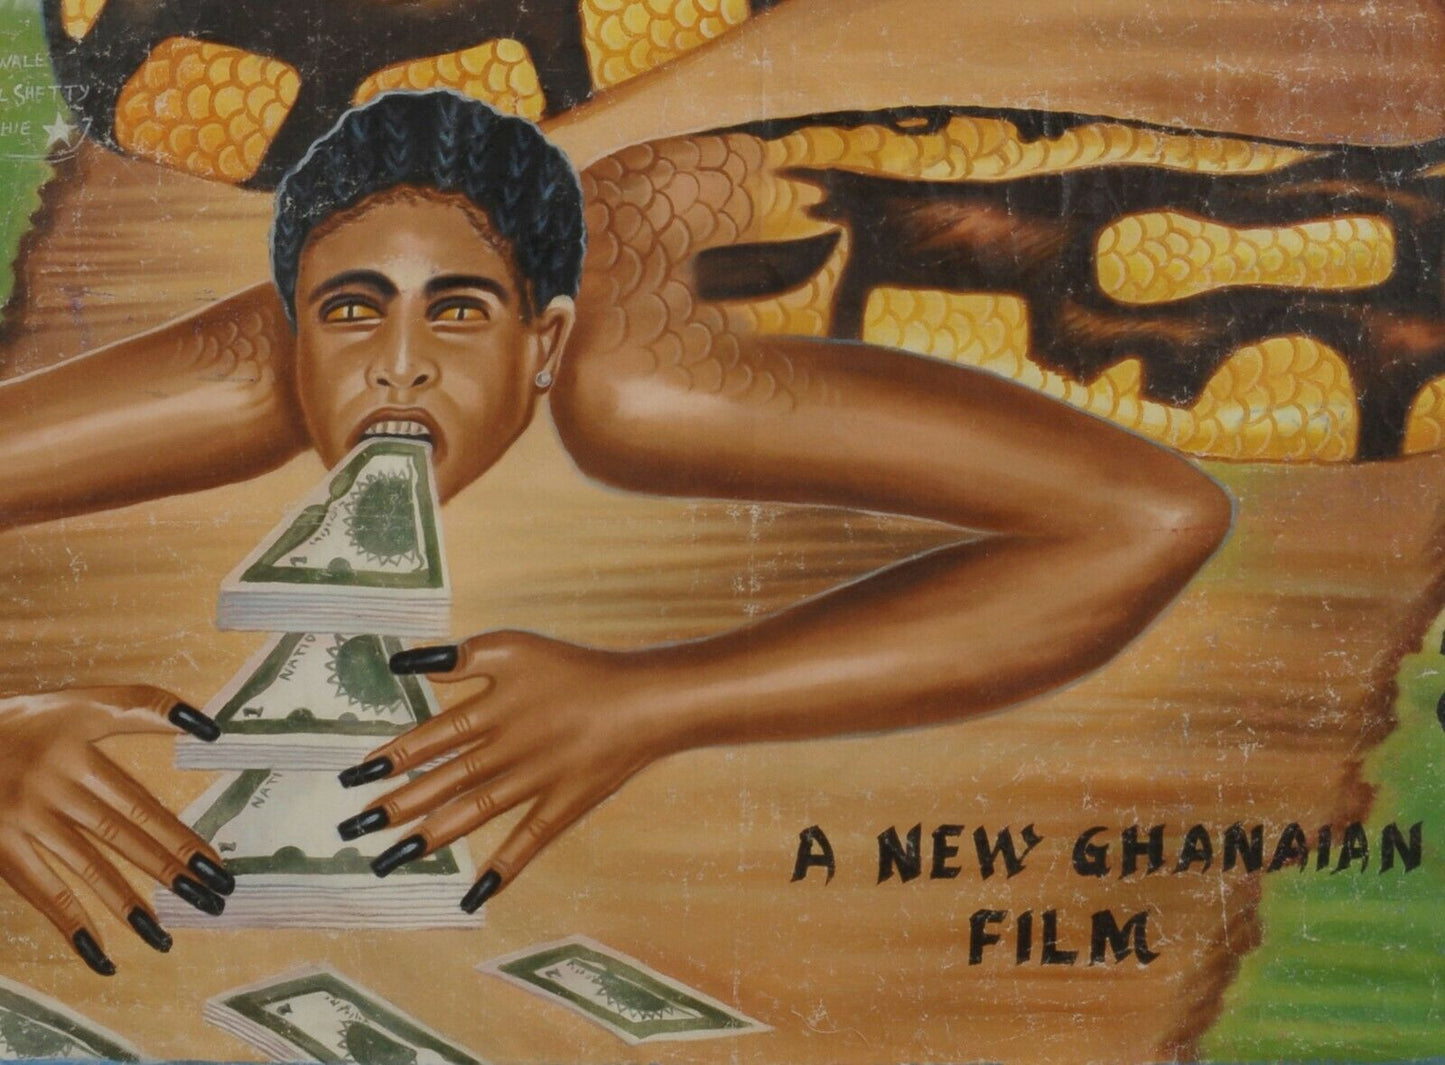 Αφίσα κινηματογράφου Αφρικανικής μοντέρνας τέχνης της Γκάνας ζωγραφισμένος στο χέρι καμβάς SESCOCASH - Tribalgh